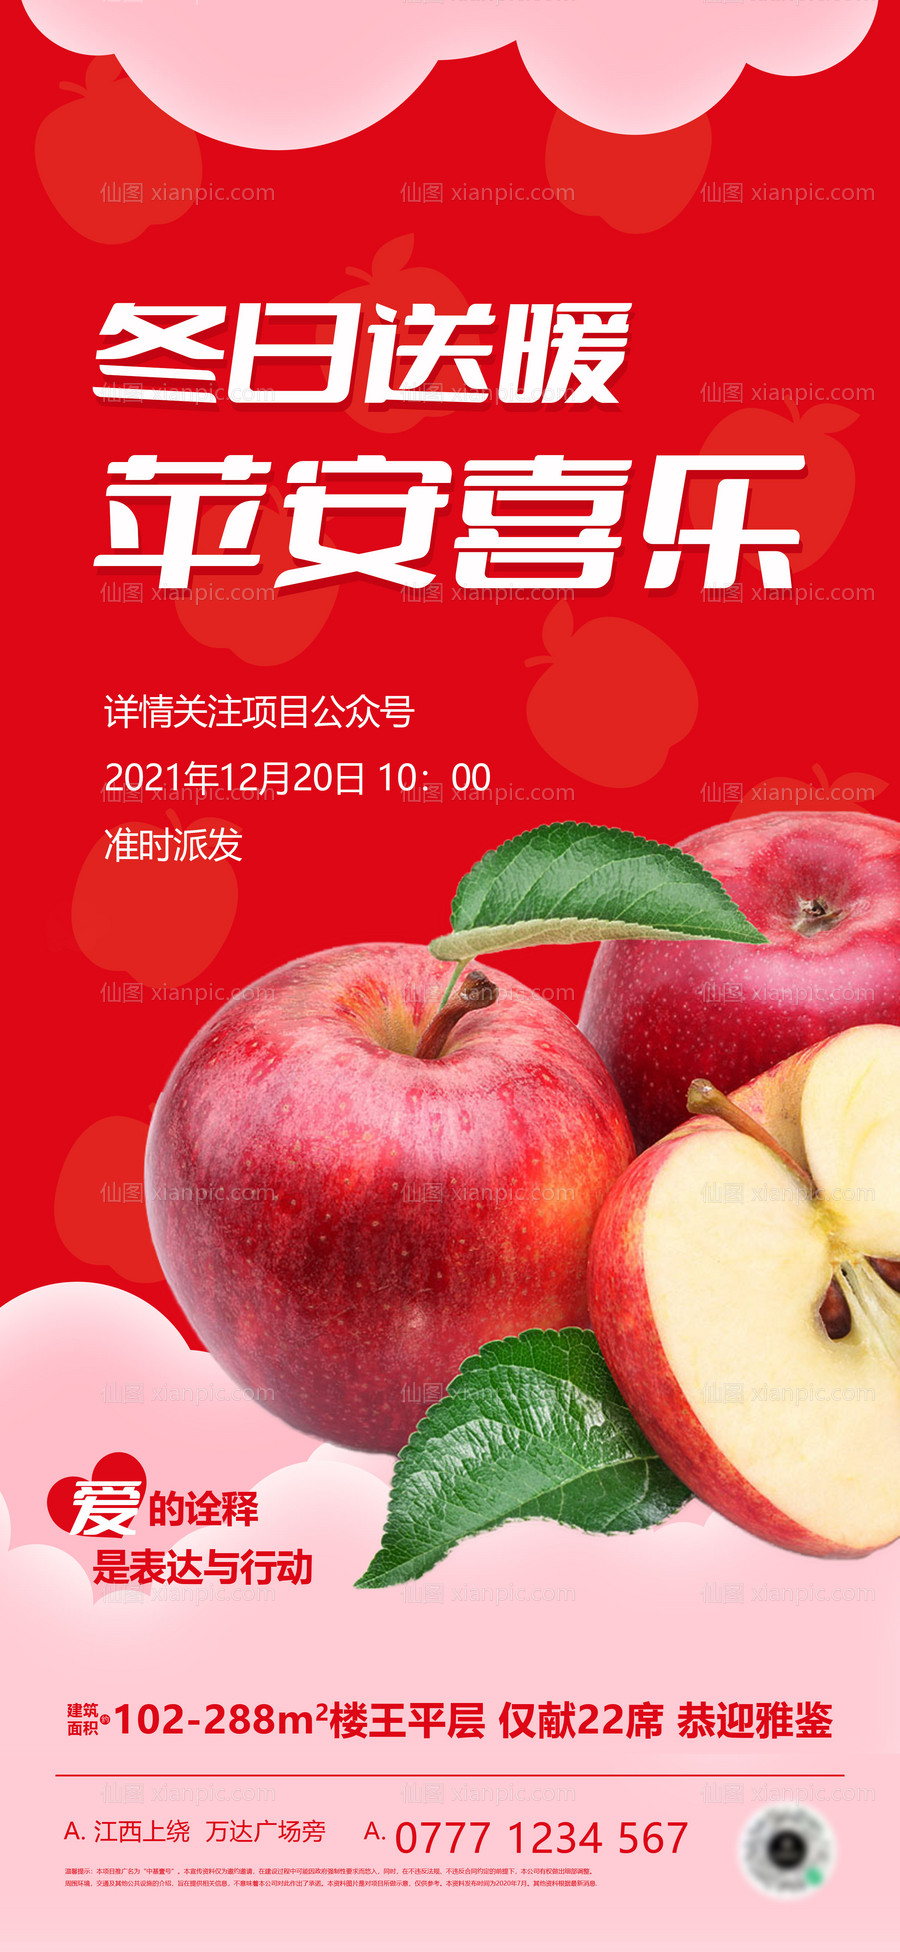 素材乐-地产派送苹果圣诞节活动海报